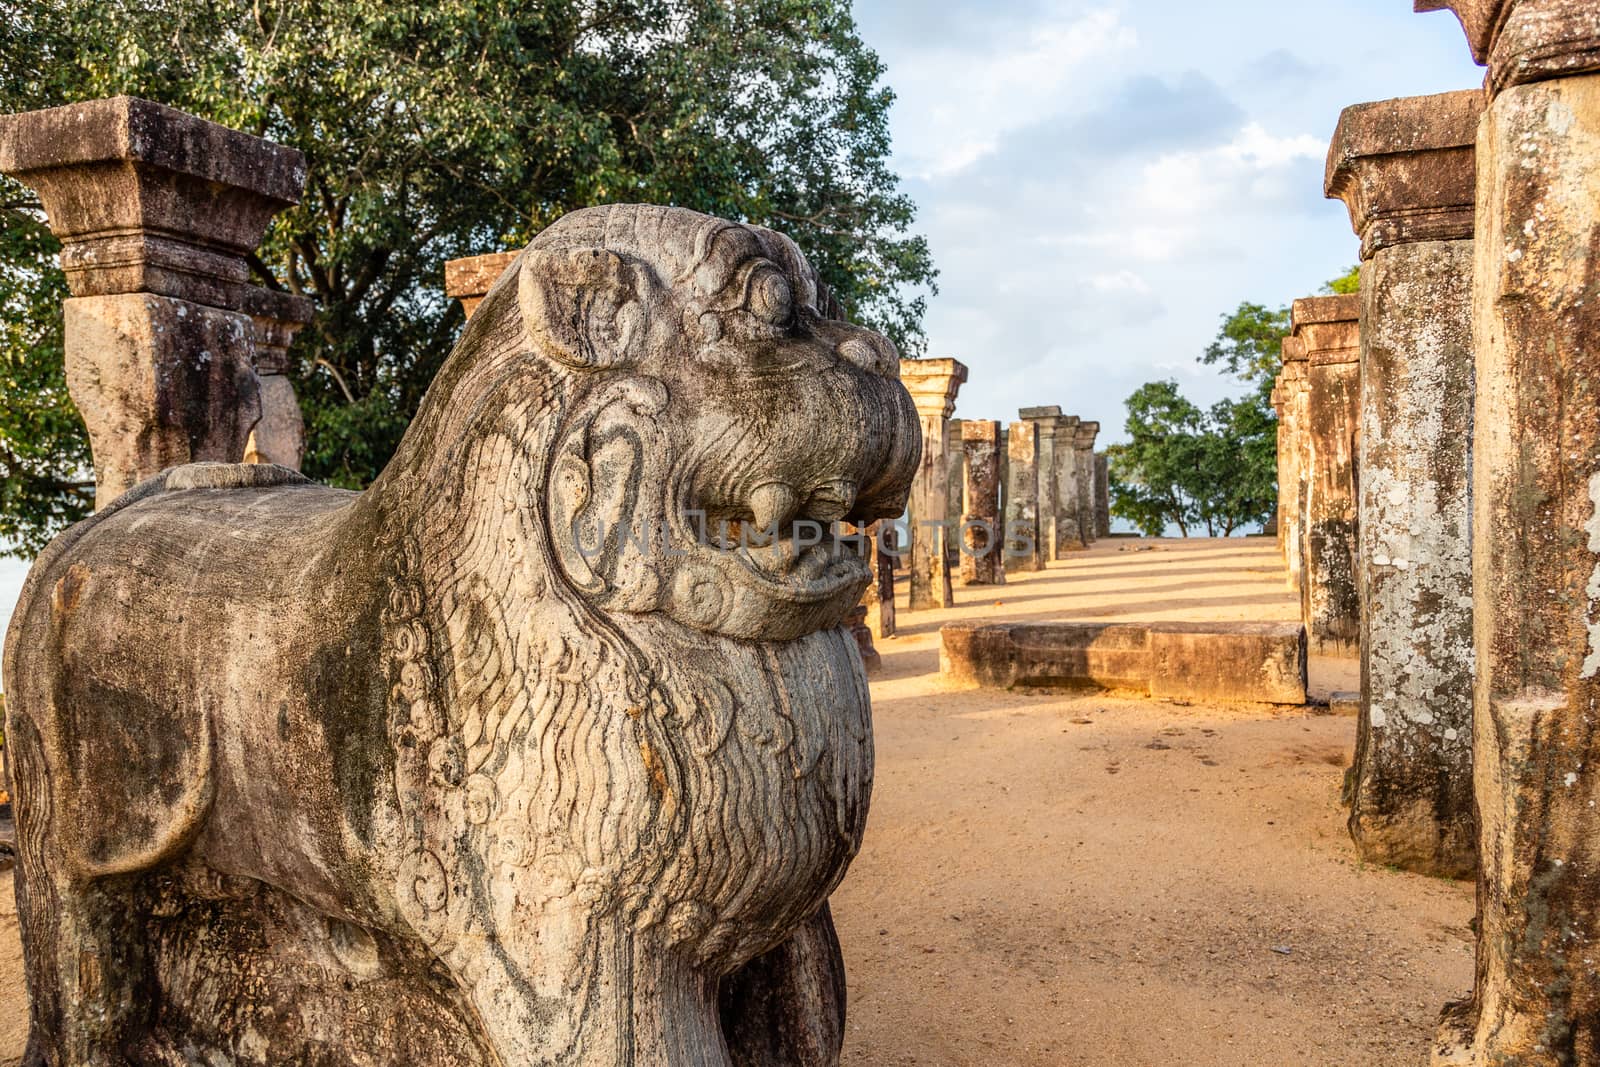 Lions statues at Nissanka Malla King’s audience hall, Polonnaruwa, Sri Lanka